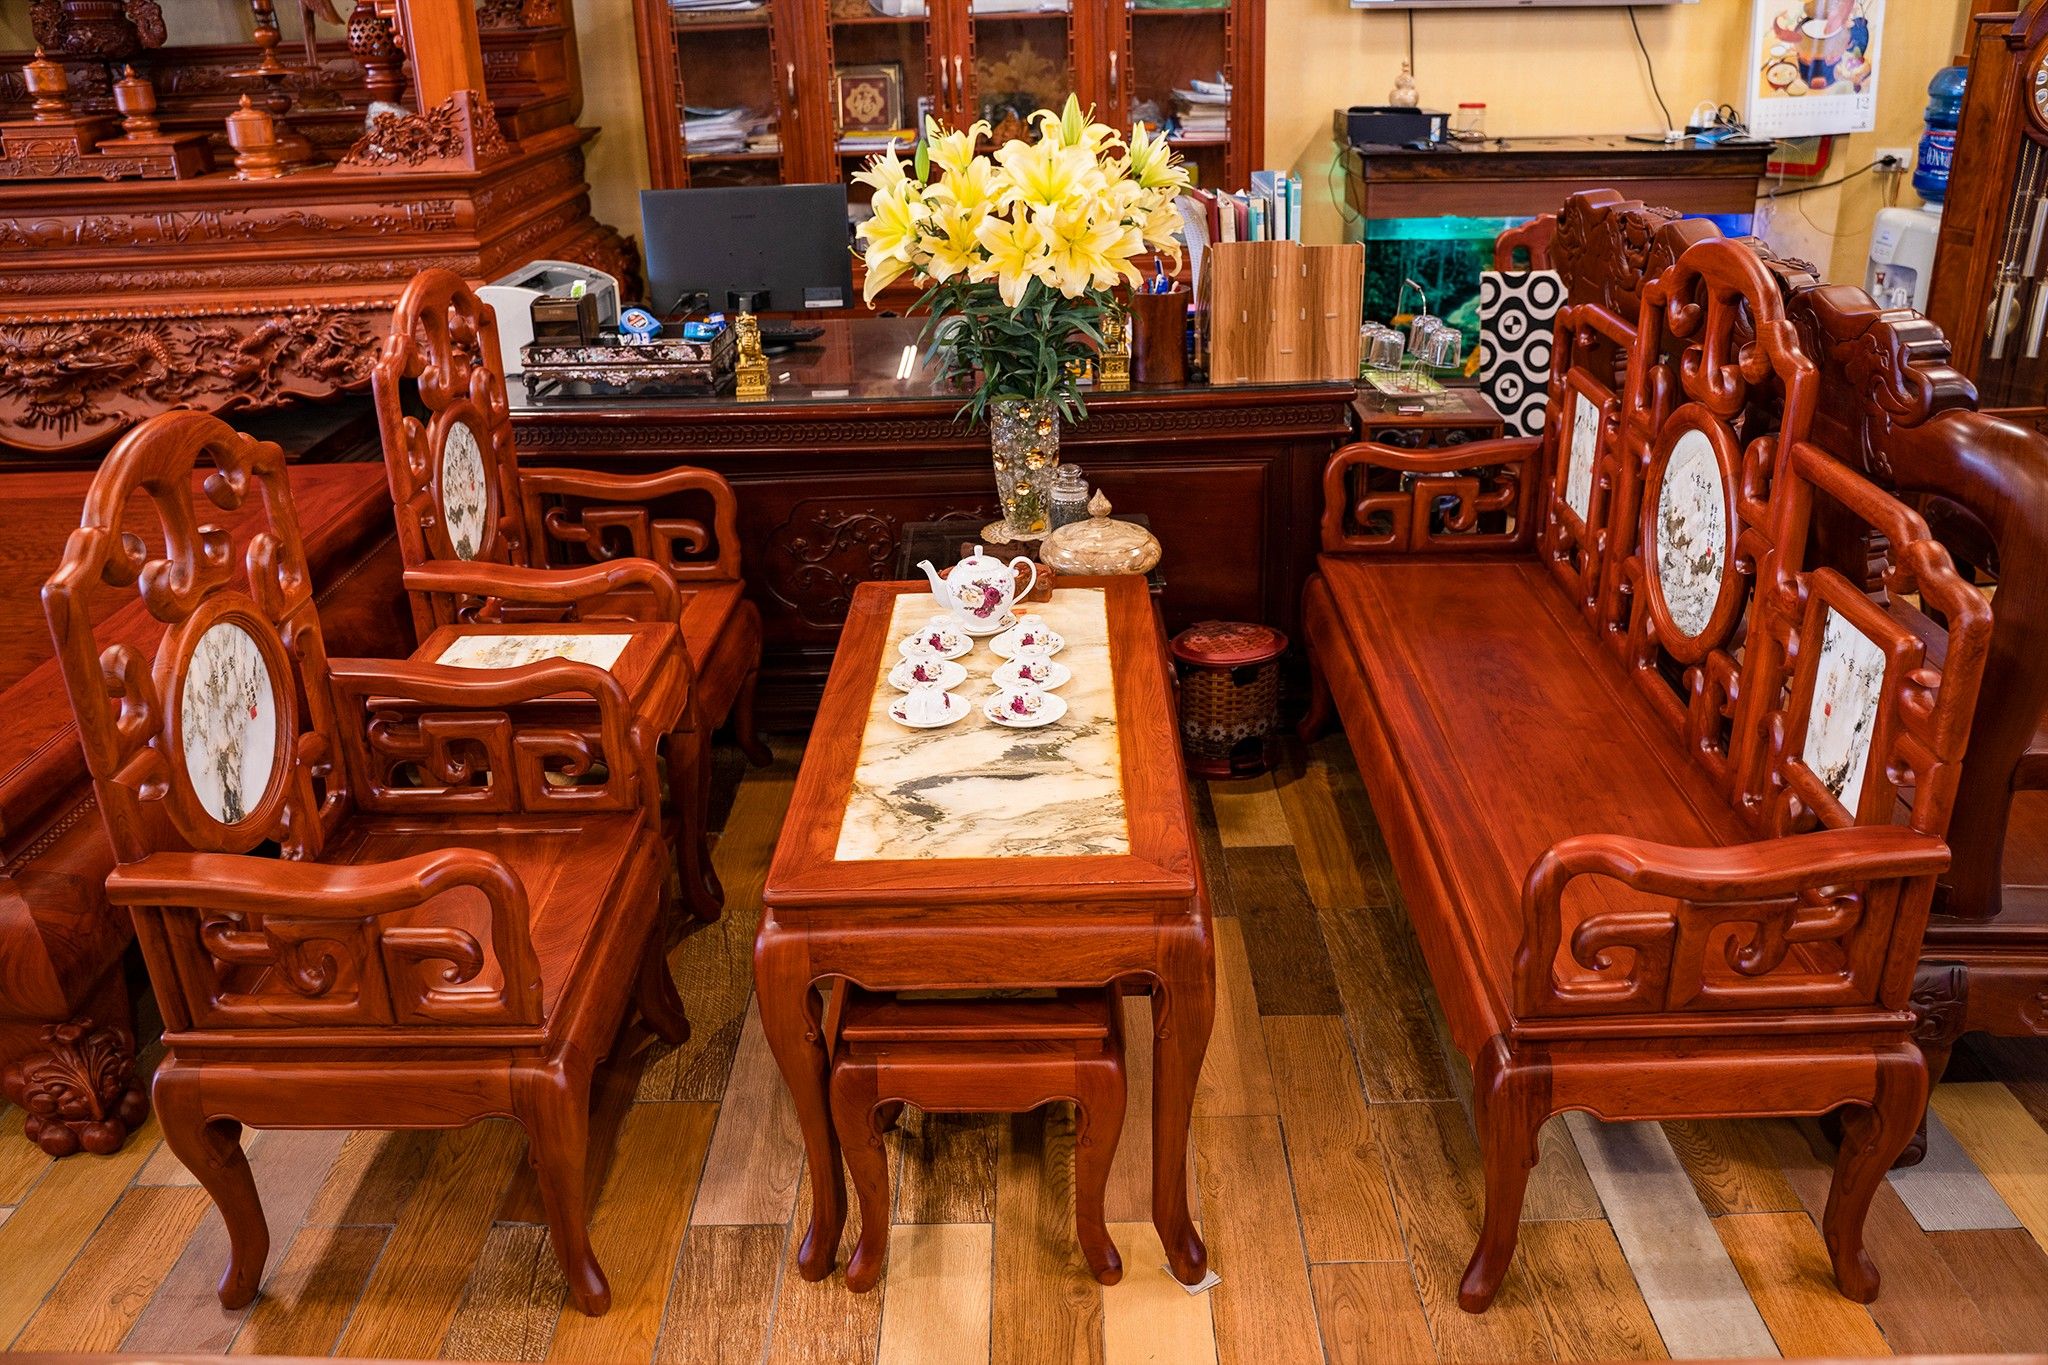 Bàn ghế kiểu cổ điển: Một bộ bàn ghế cổ điển sử dụng chất liệu gỗ tự nhiên và thiết kế độc đáo sẽ khiến bạn cảm thấy như đang sống trong một căn phòng với phong cách hoàng gia. Hãy để bộ bàn ghế cổ điển mang lại cho bạn trải nghiệm thú vị về phong cách nội thất cổ điển.